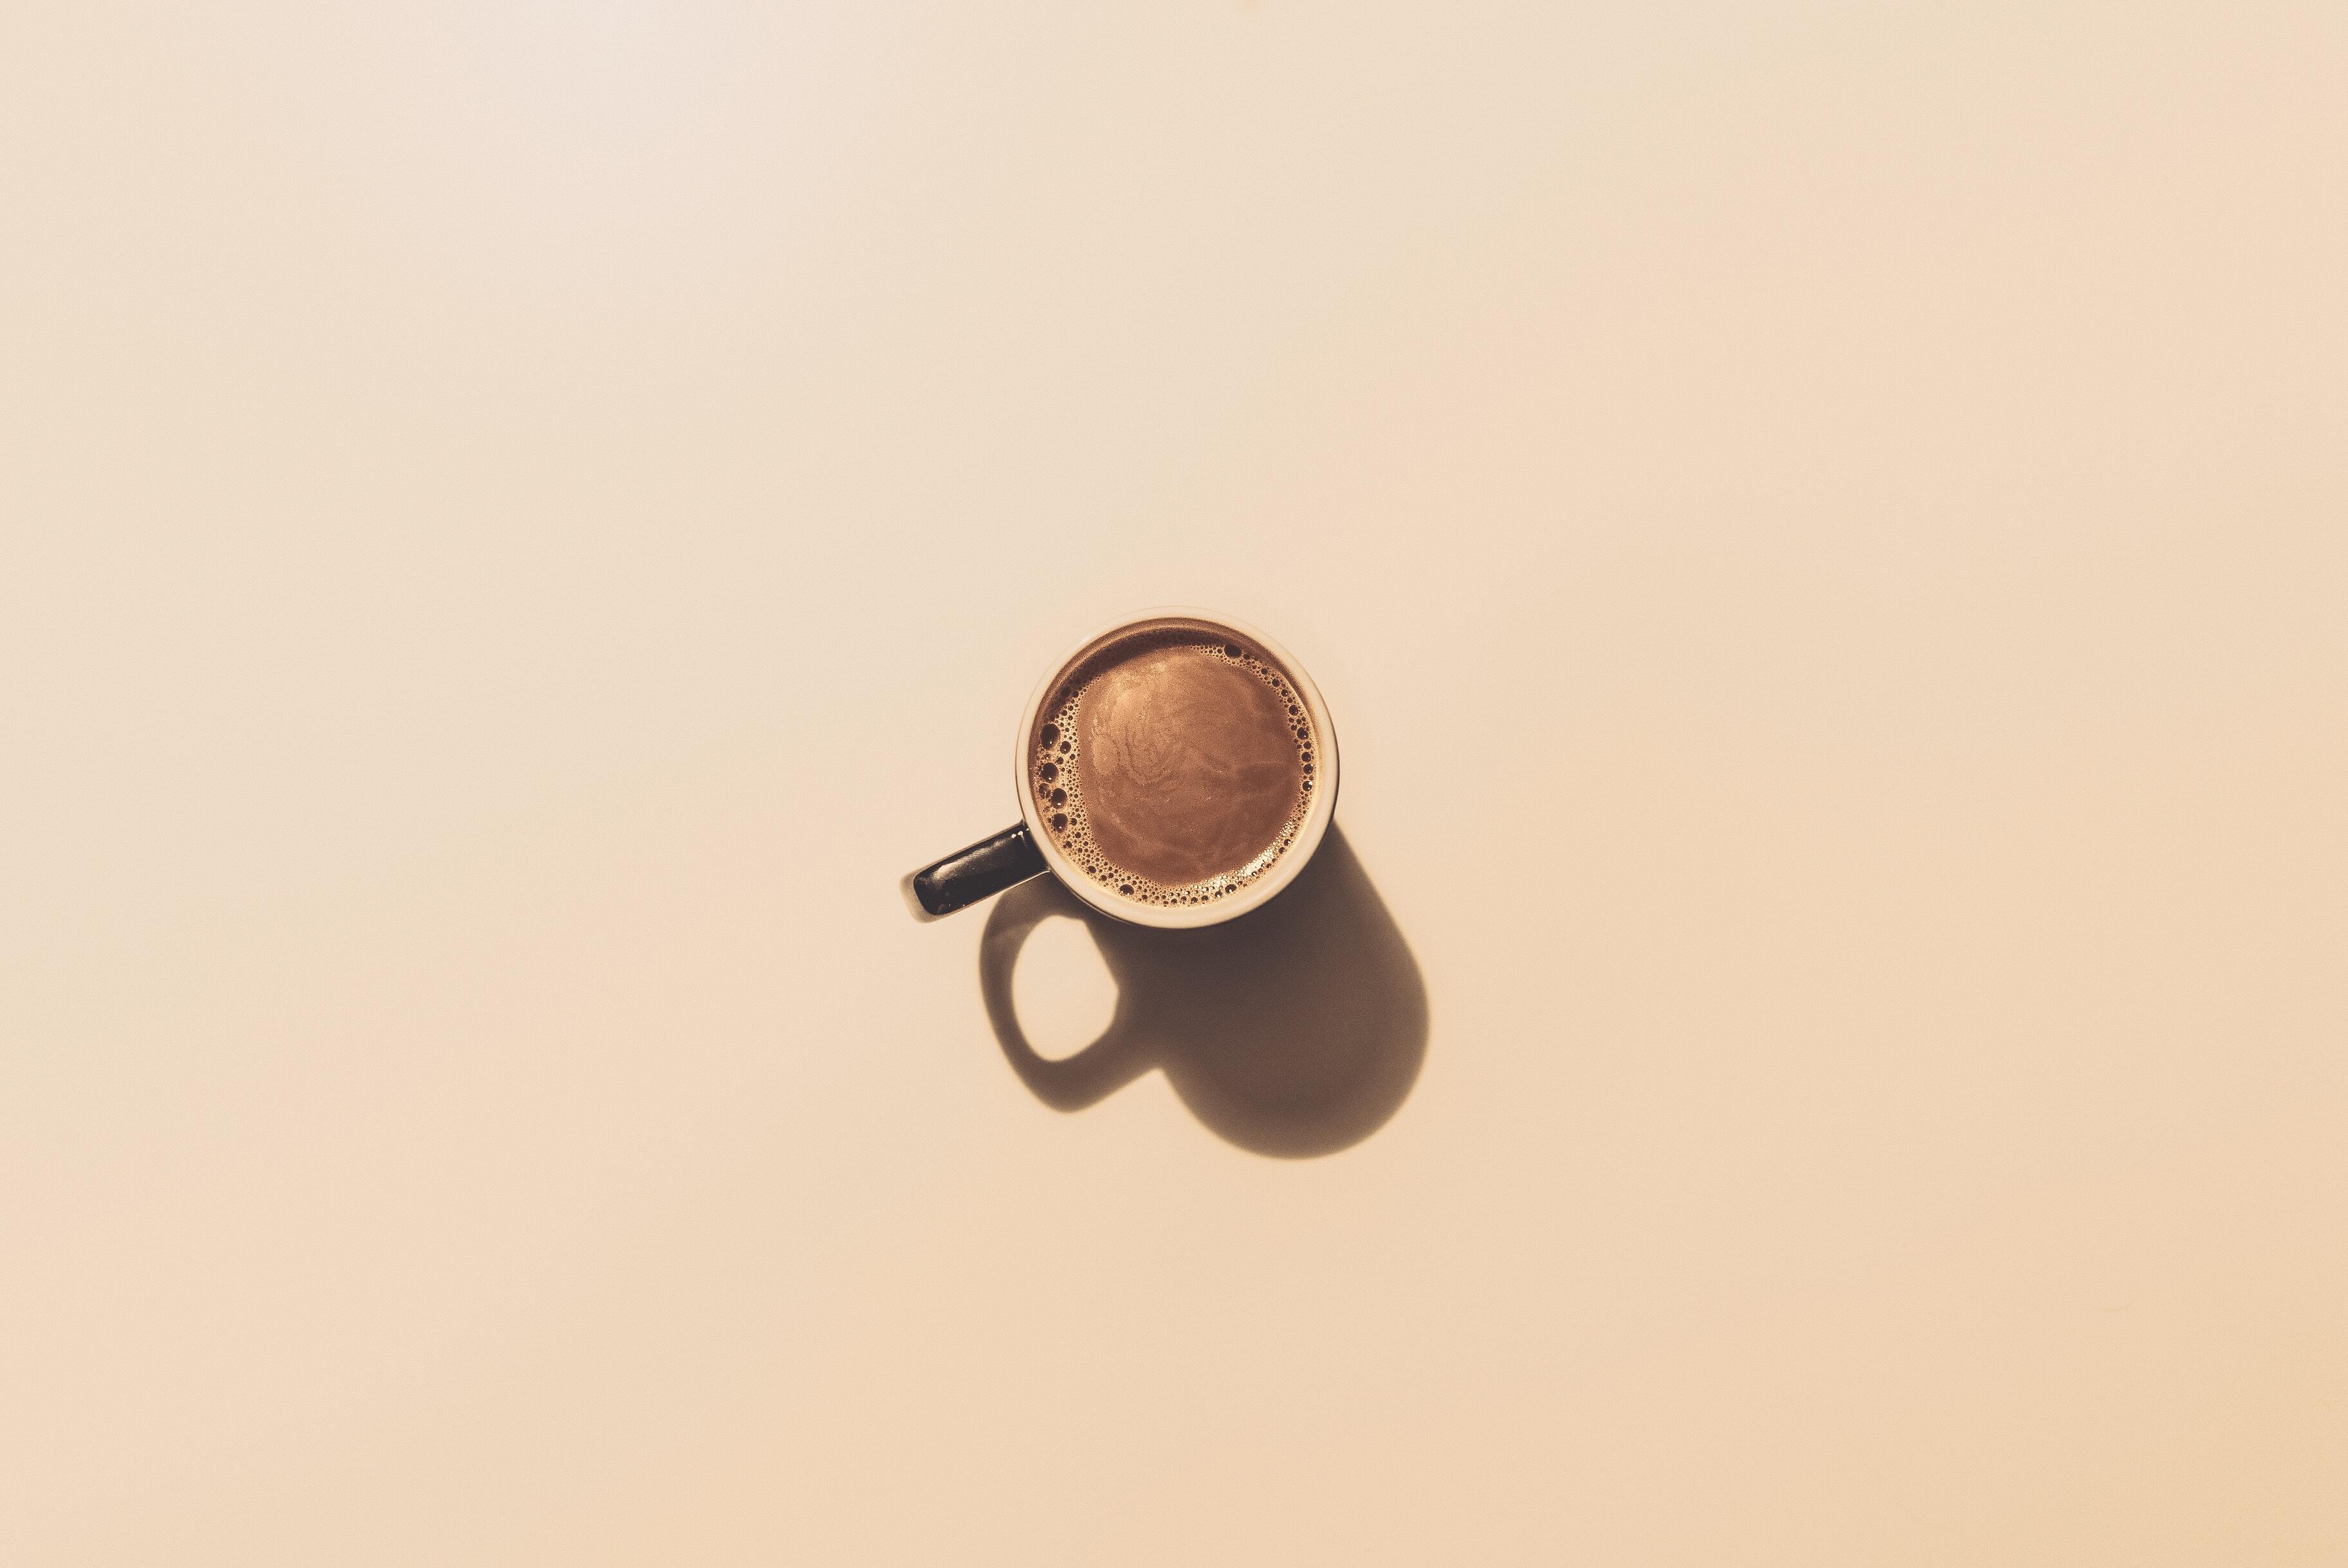 Употребление более 2 чашек кофе в день может удвоить риск смерти у людей с гипертонией